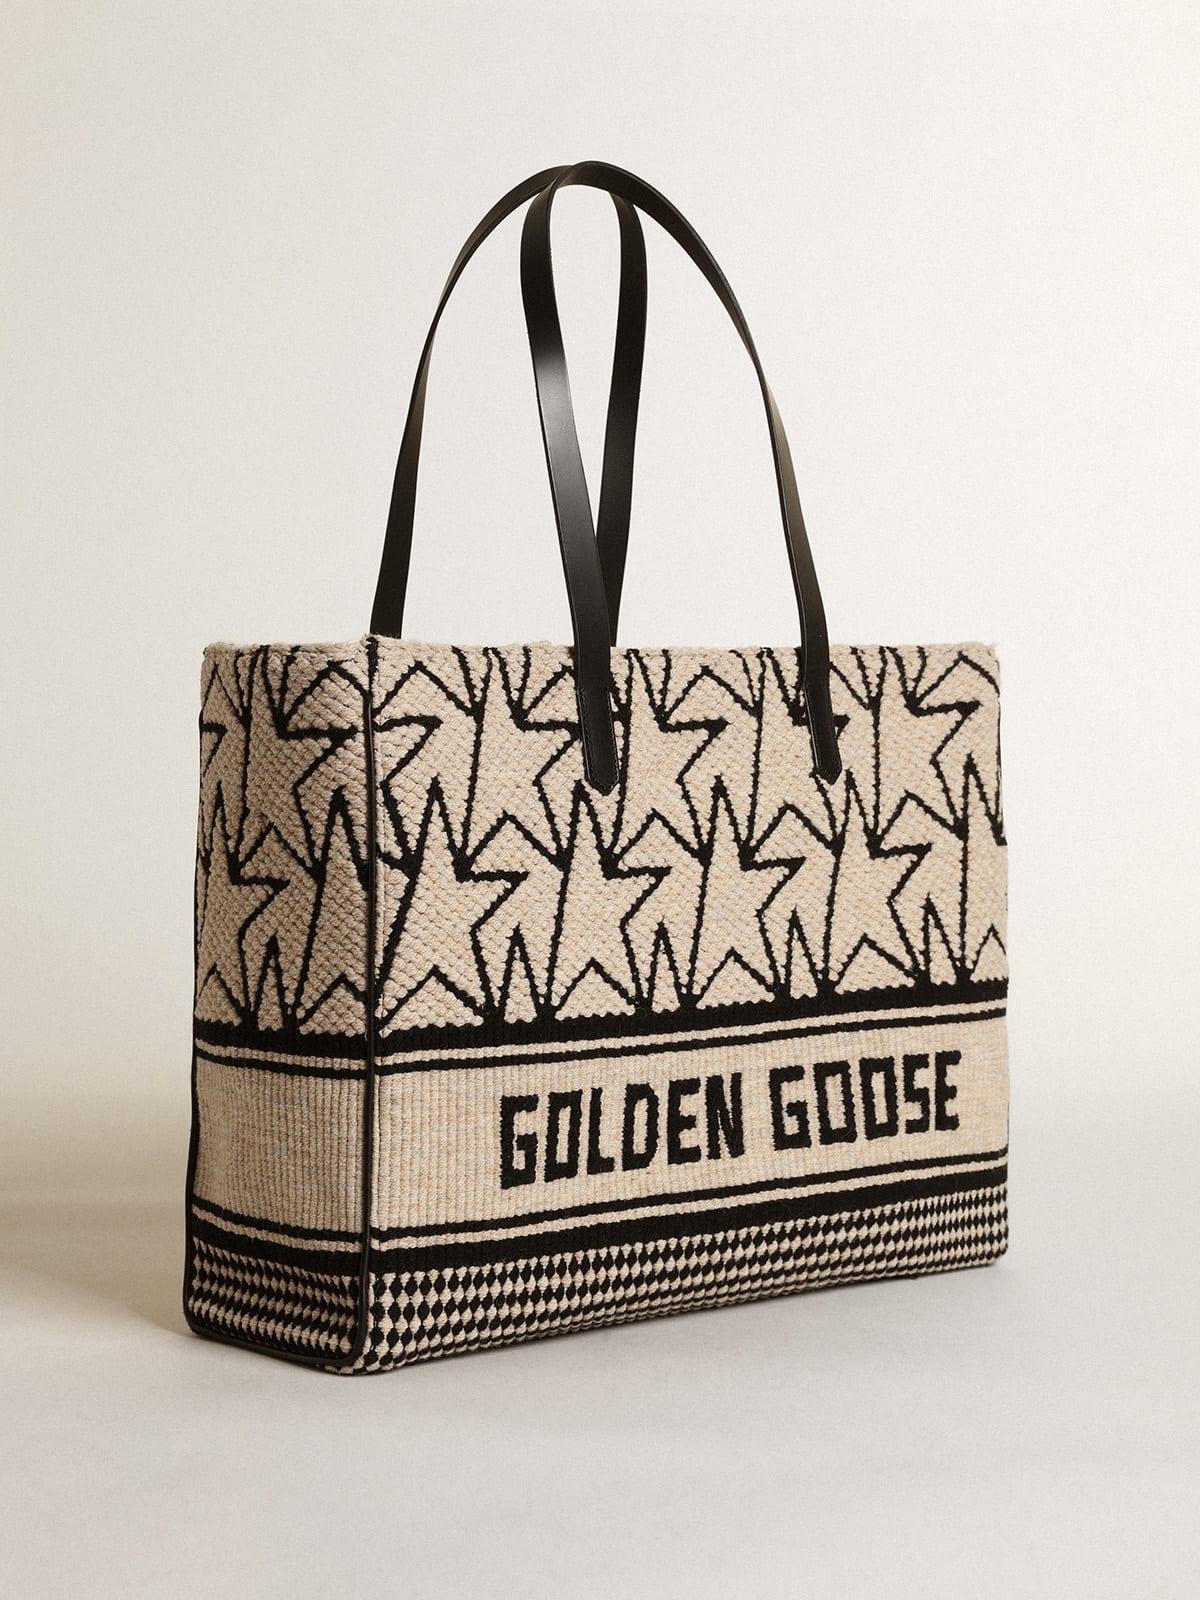 Golden Goose - Sac California Bag East-West en laine jacquard blanc de lait avec monogrammes et inscription Golden Goose noire contrastée in 